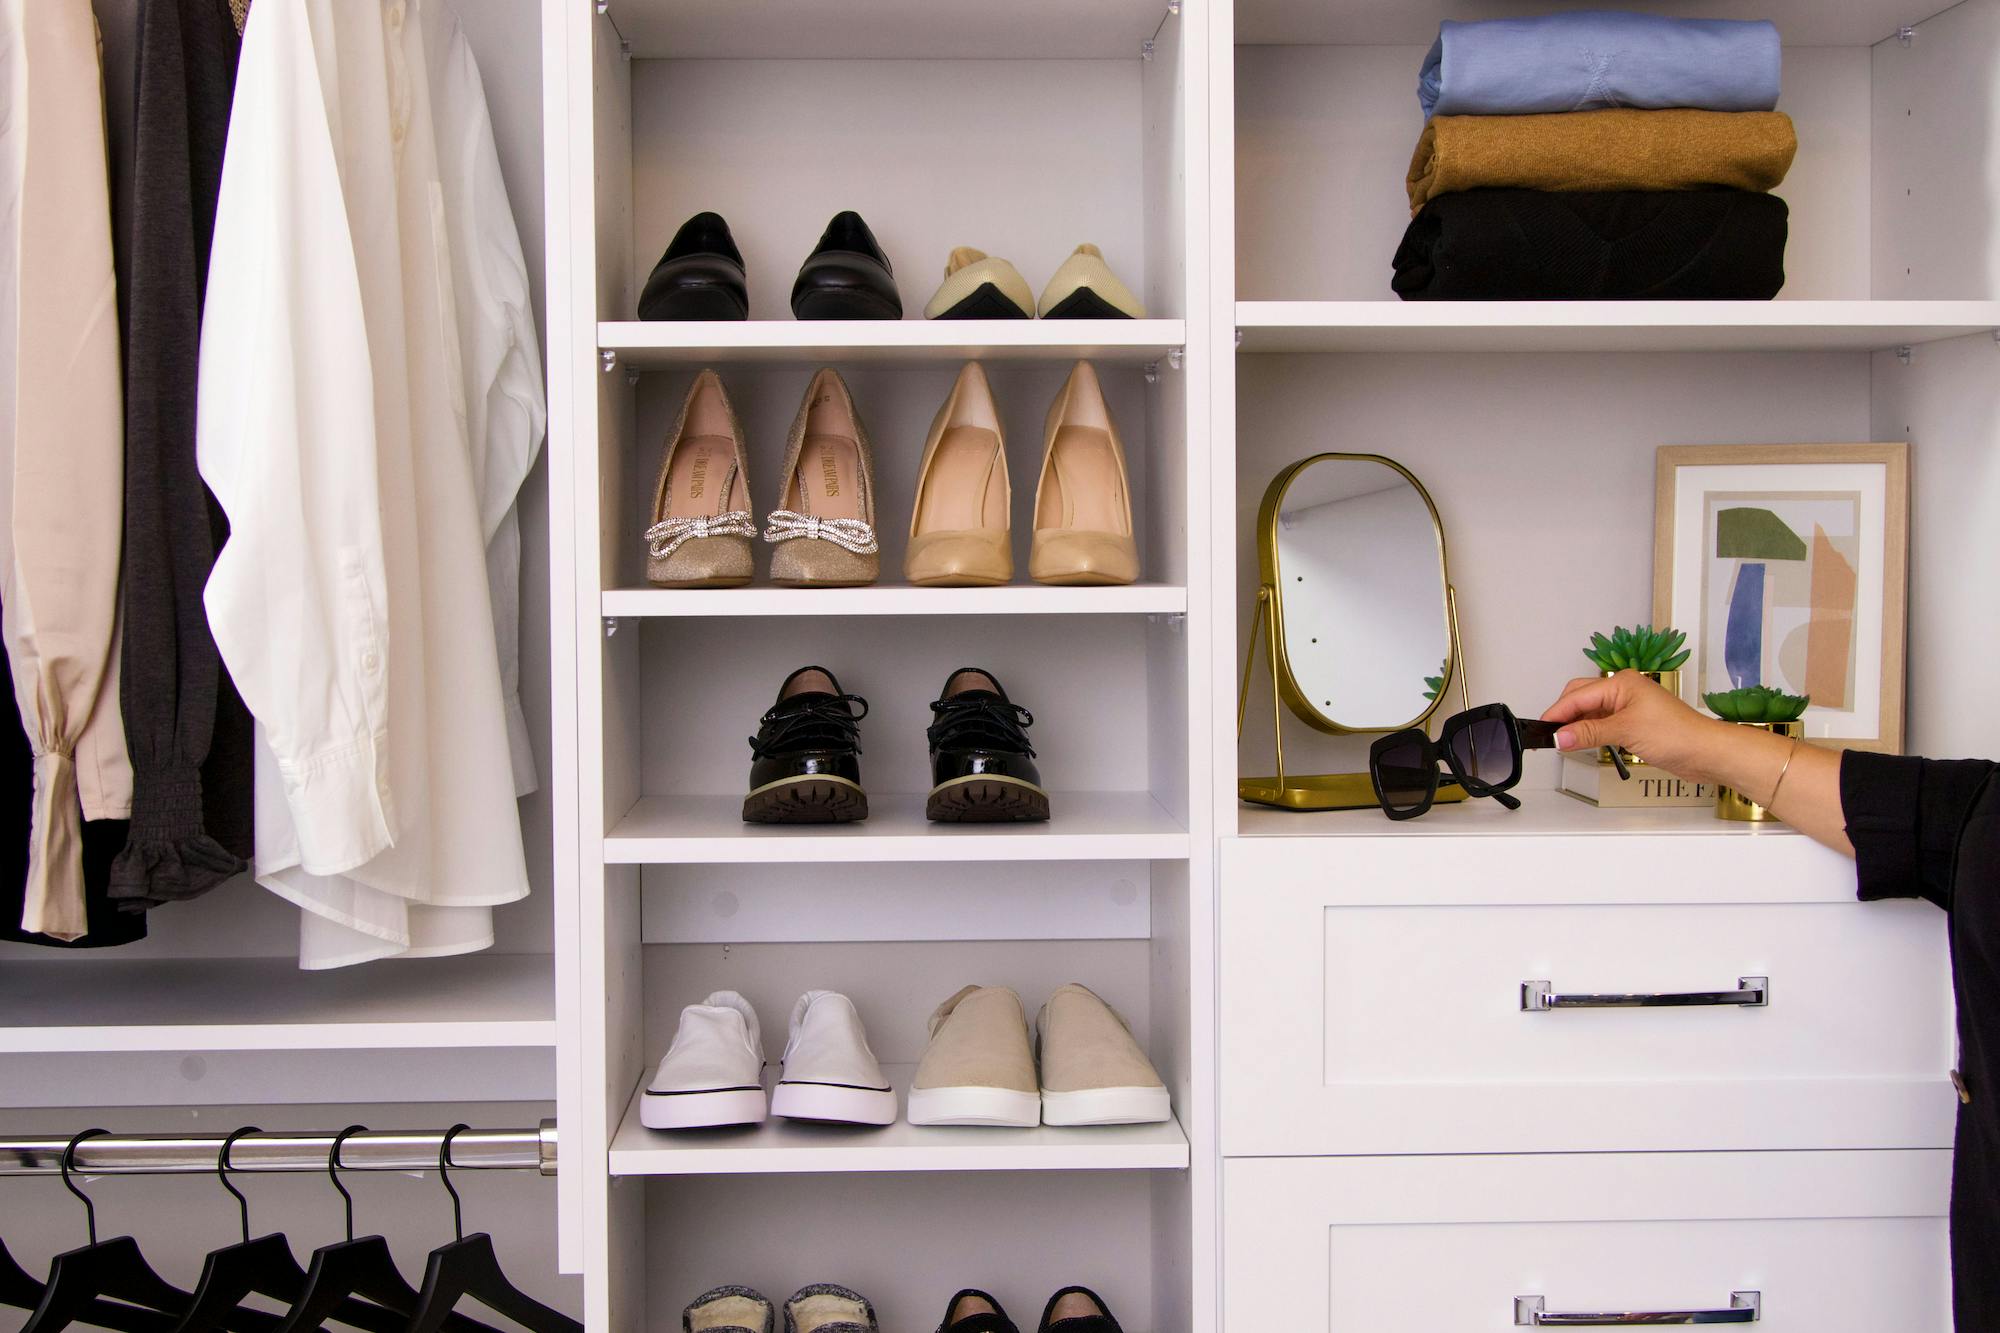 Shoe storage in closet